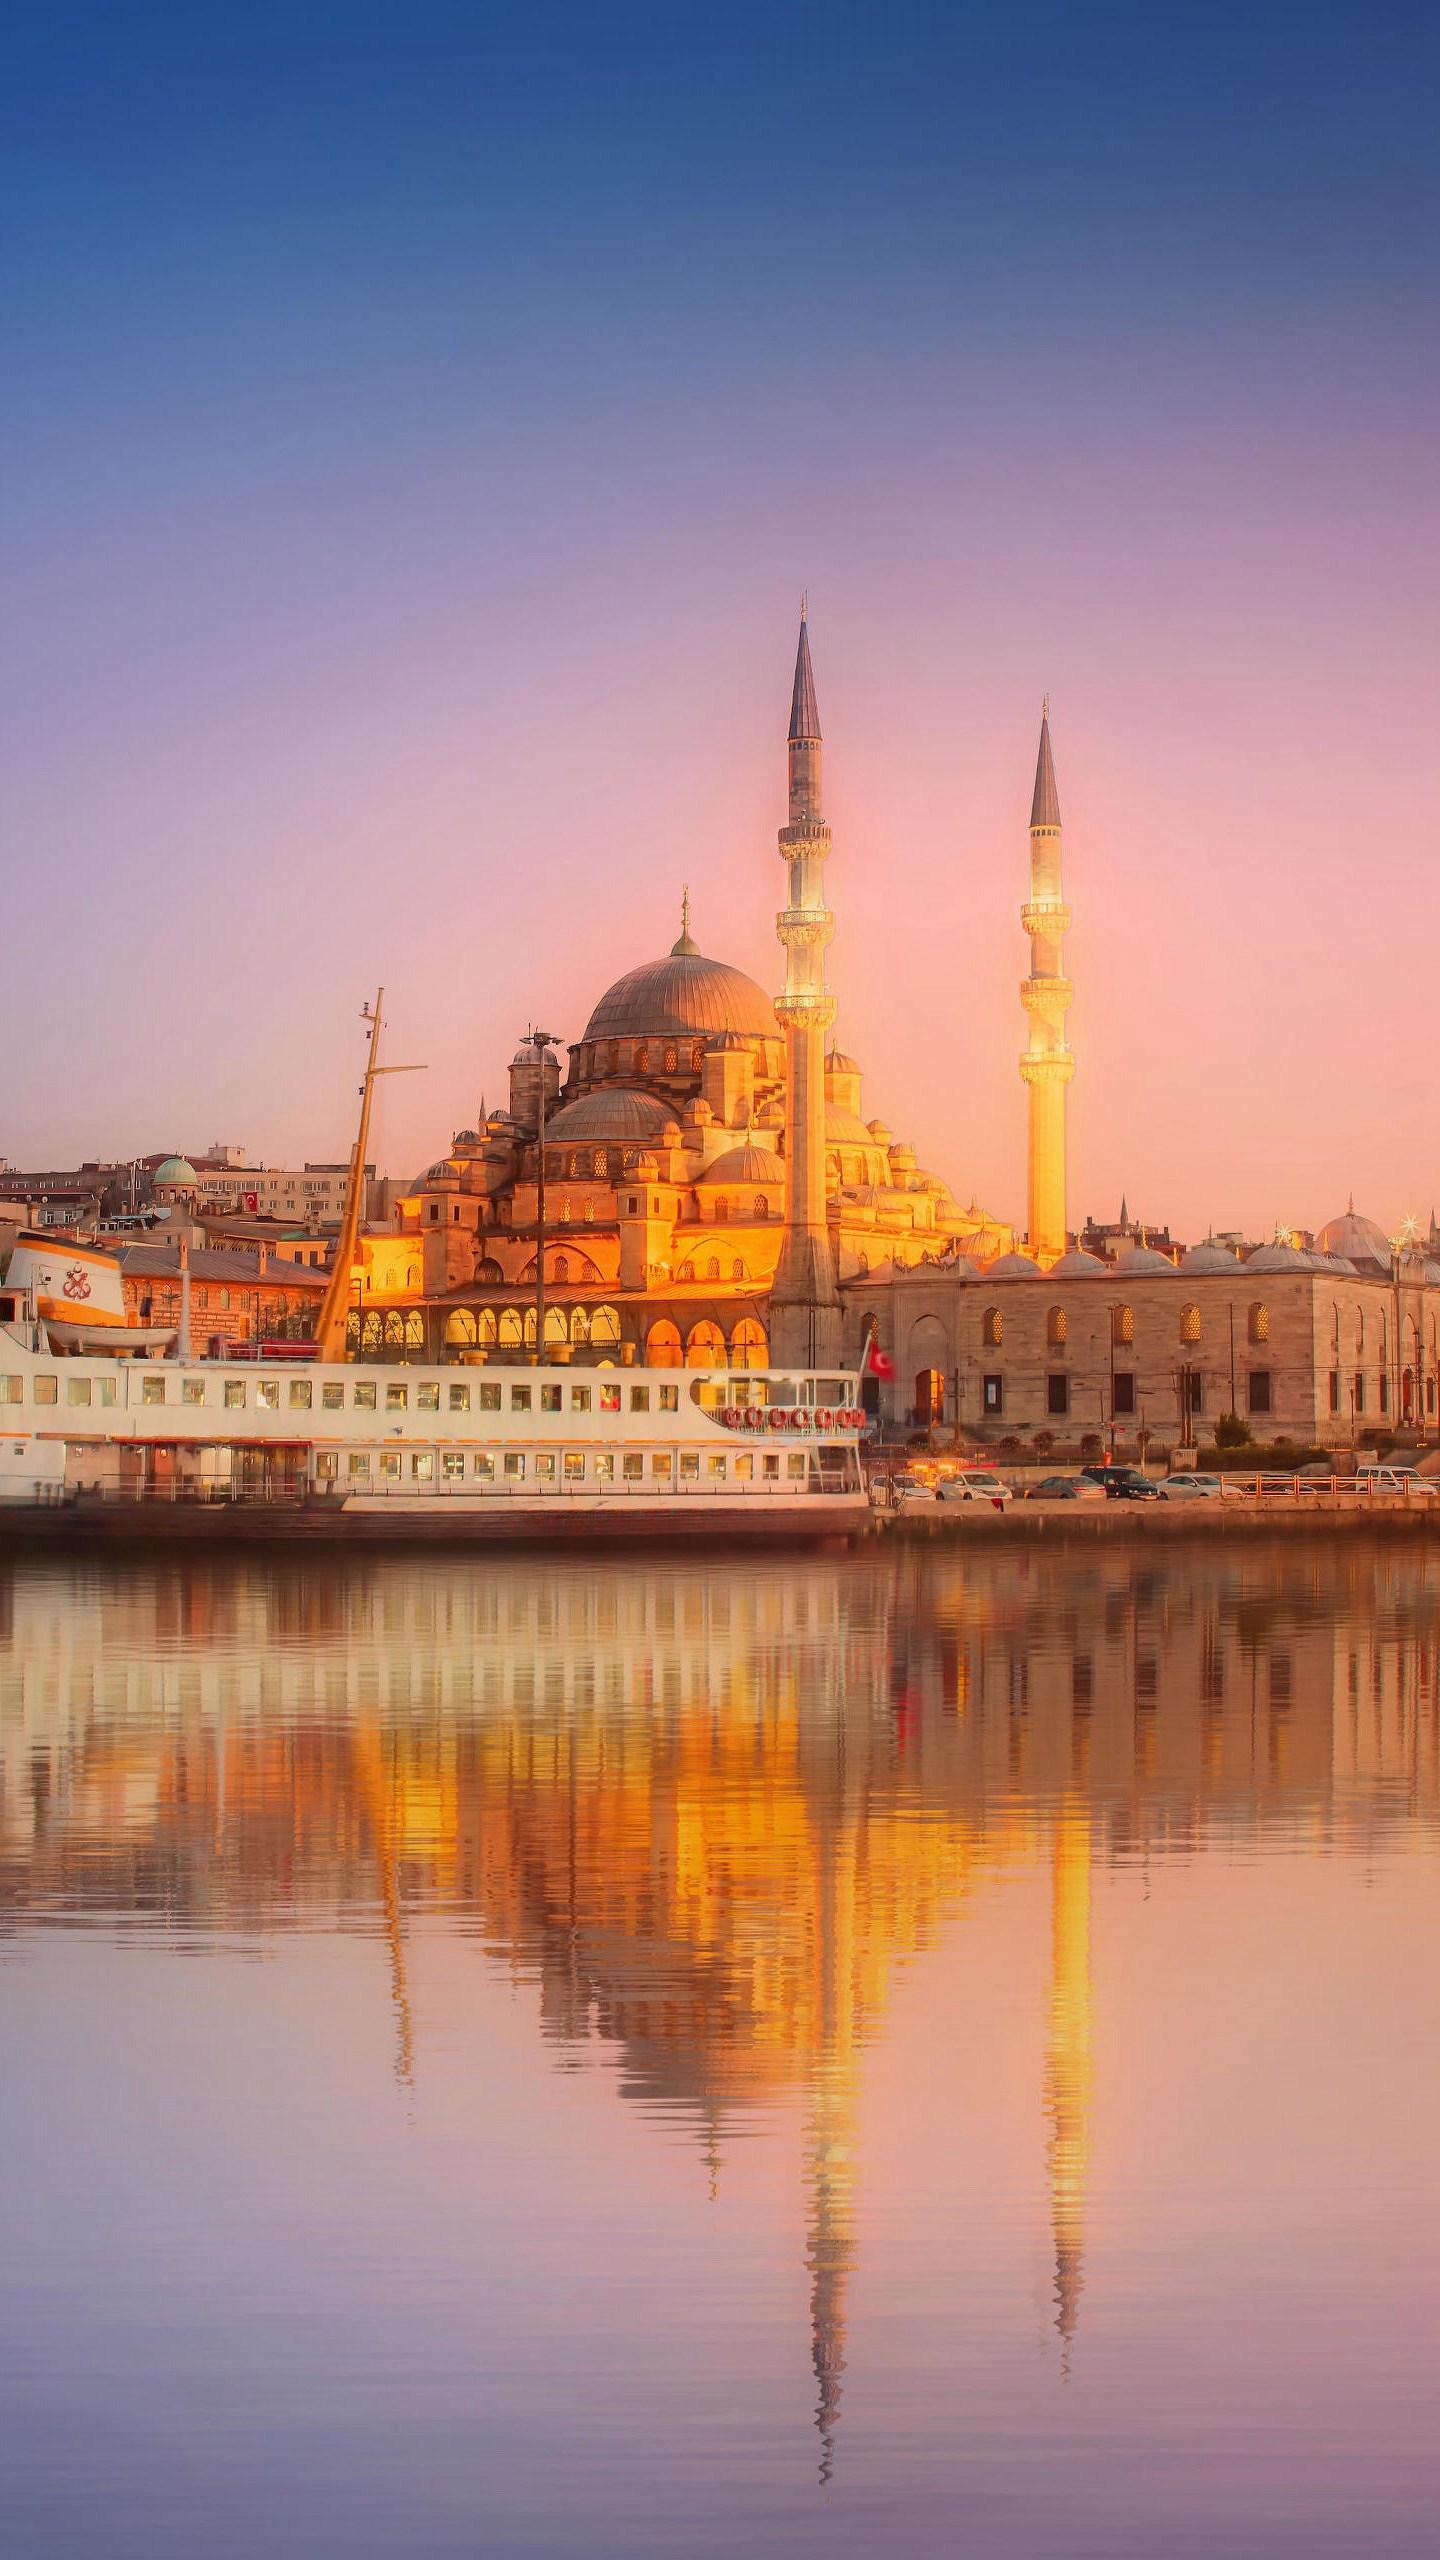 伊斯坦布尔是座千年古城,横跨亚欧两大洲,既有东方文化身影,又有西方